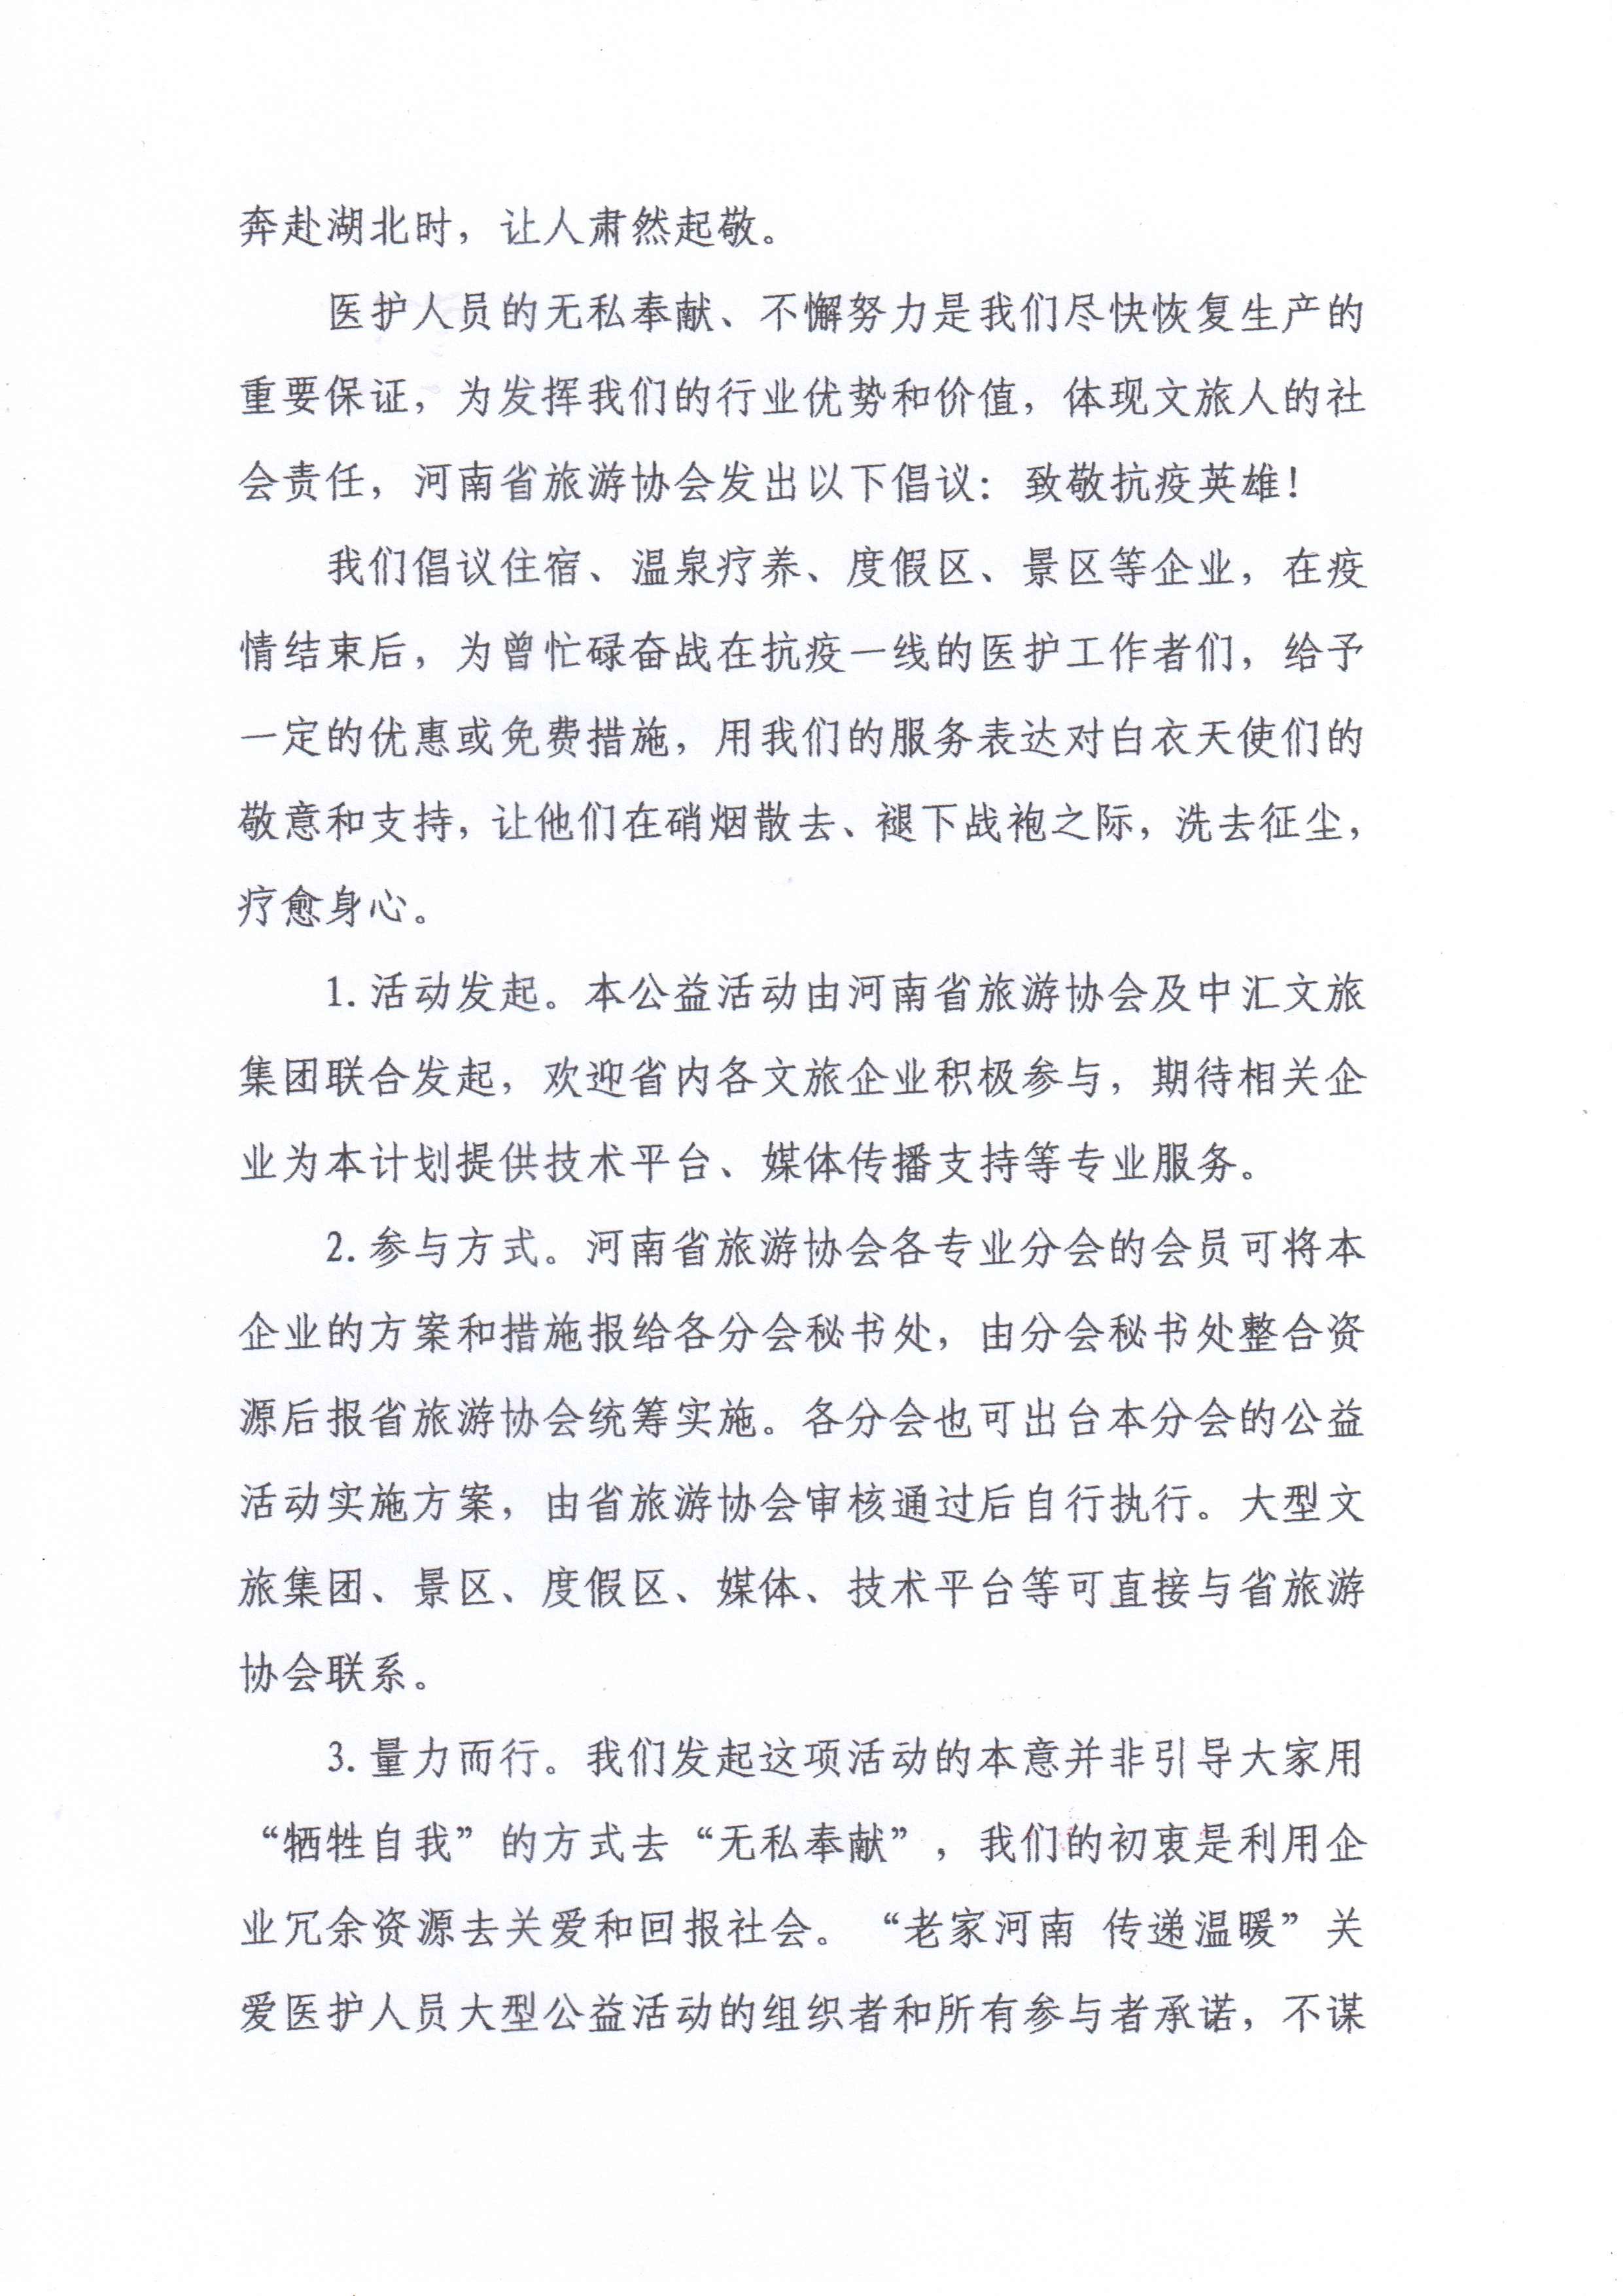 河南省旅游协会颁布“老家河南 传递温暖”关爱医护人员大型公益活动倡议书